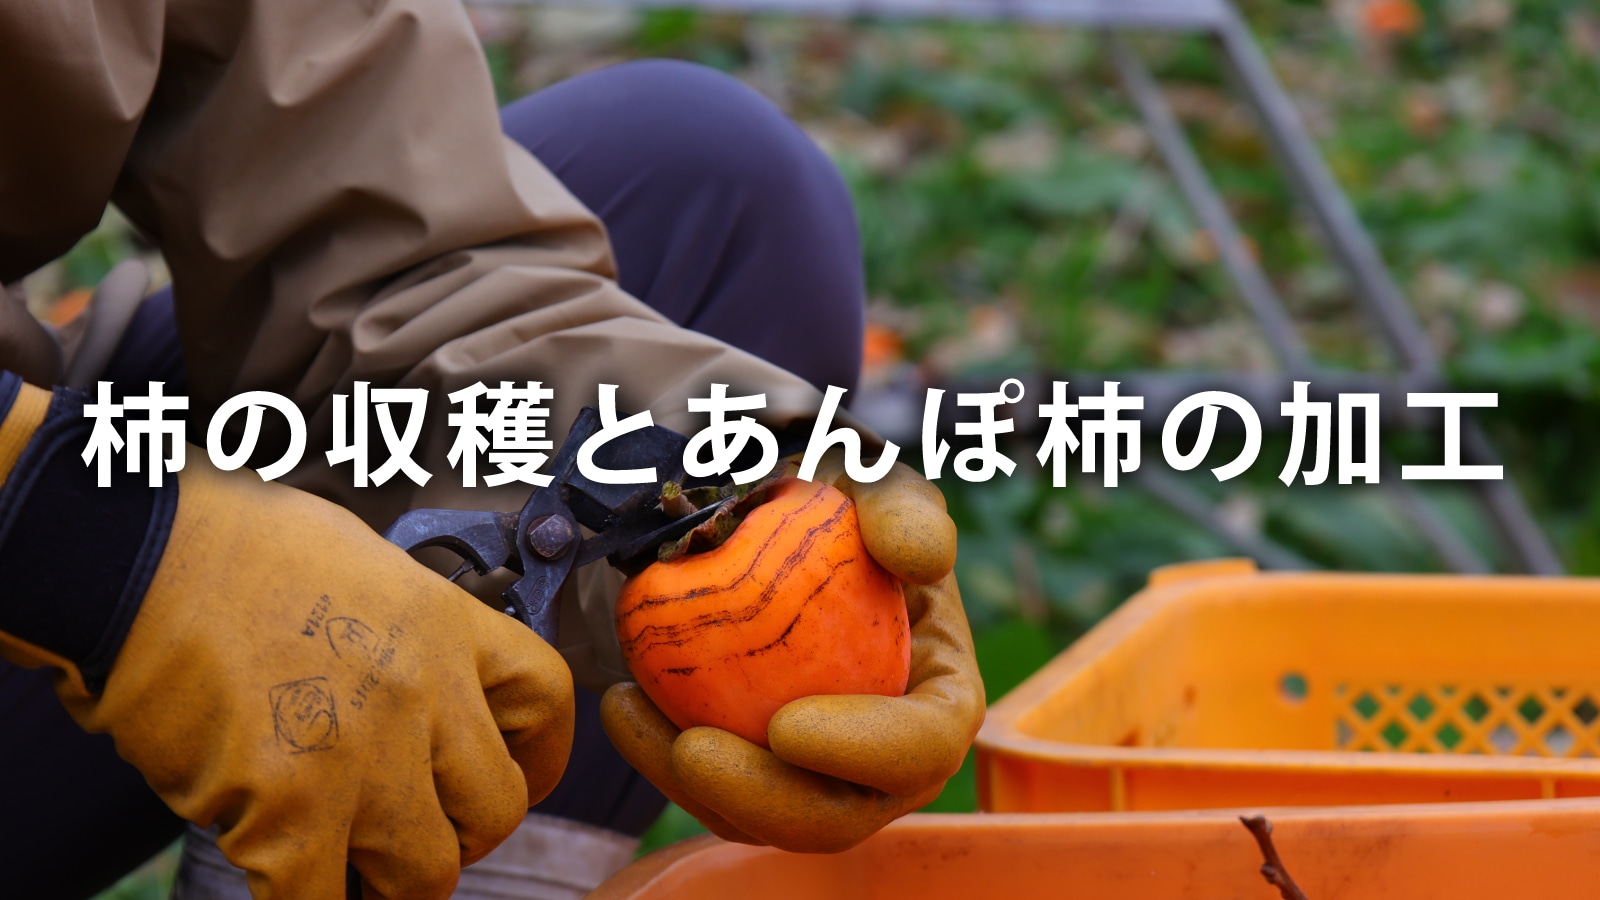 /w4/engeijin/ふくしま産あんぽ柿の収穫とあんぽ柿の加工